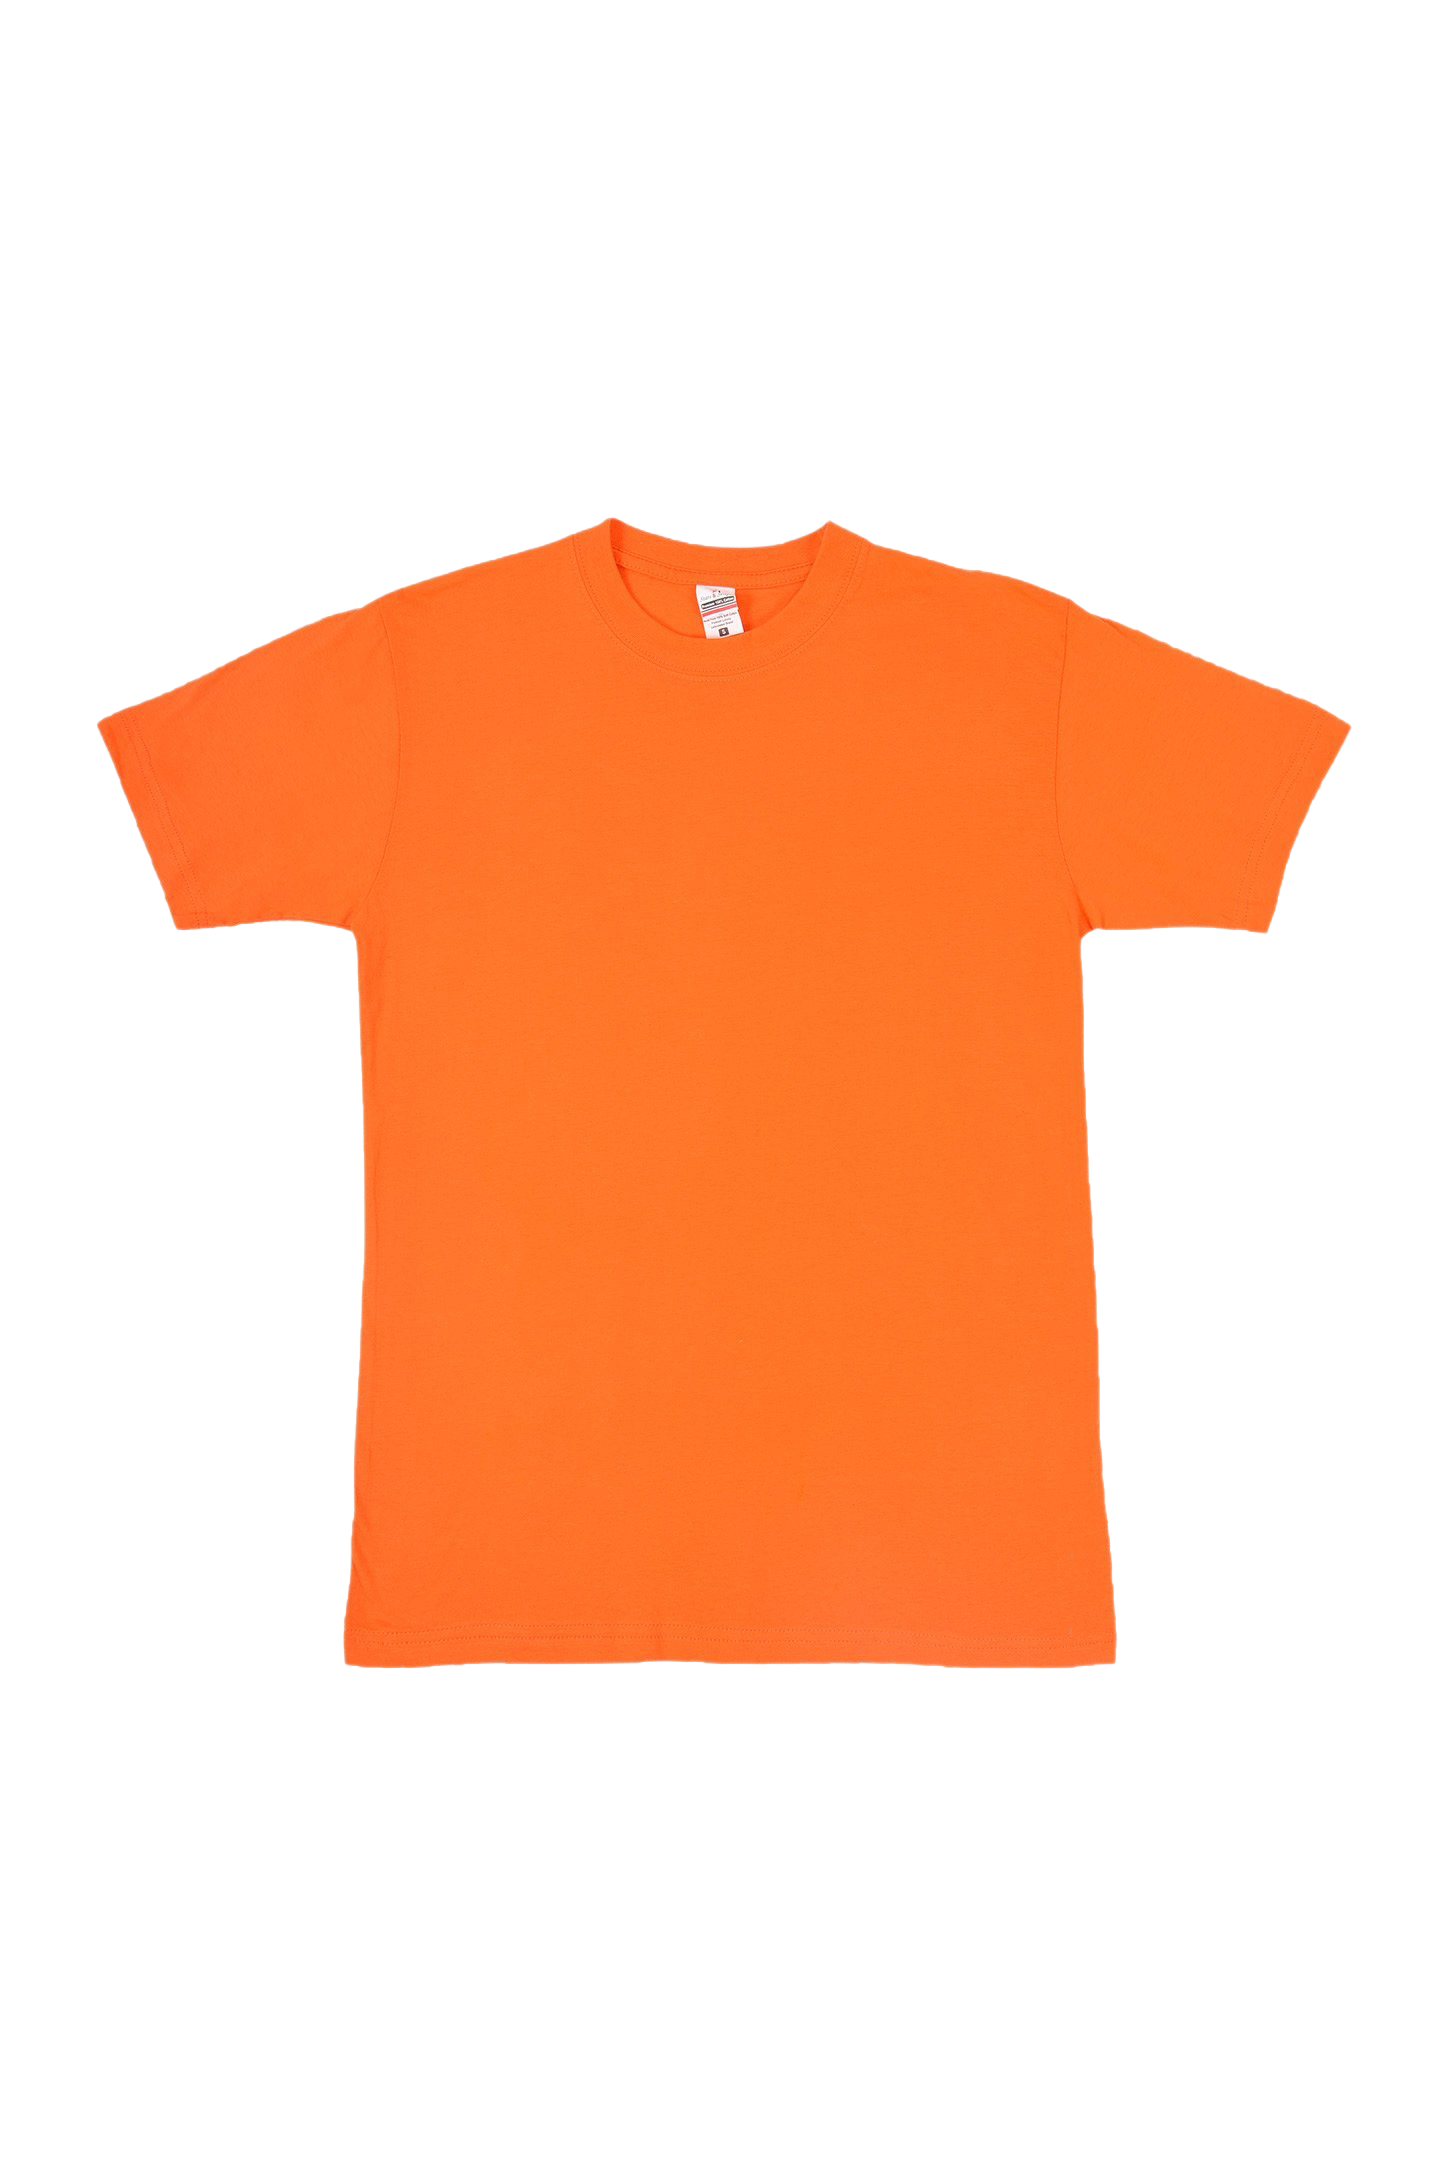 일반 오렌지 티셔츠 PNG 이미지